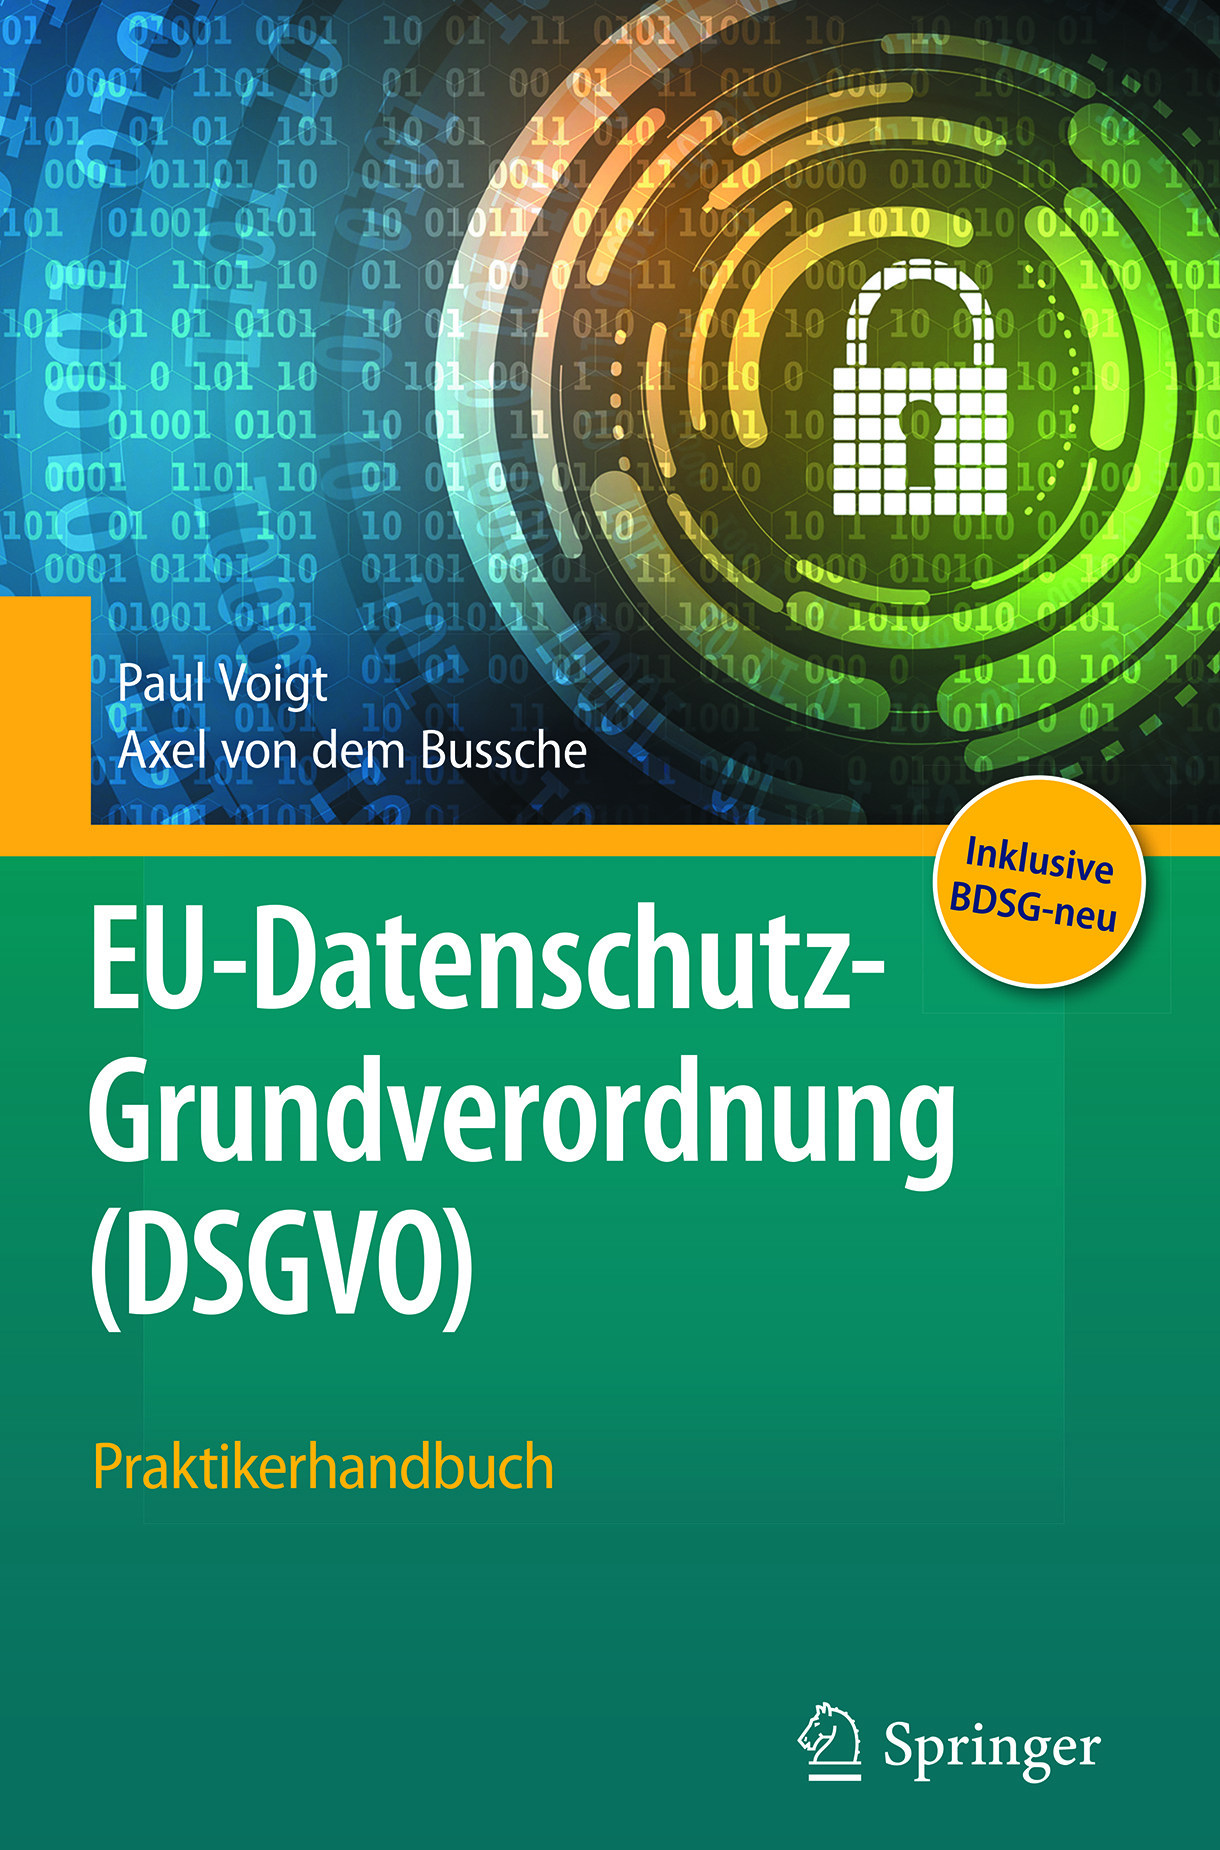 Bussche, Axel von dem - EU-Datenschutz-Grundverordnung (DSGVO), ebook